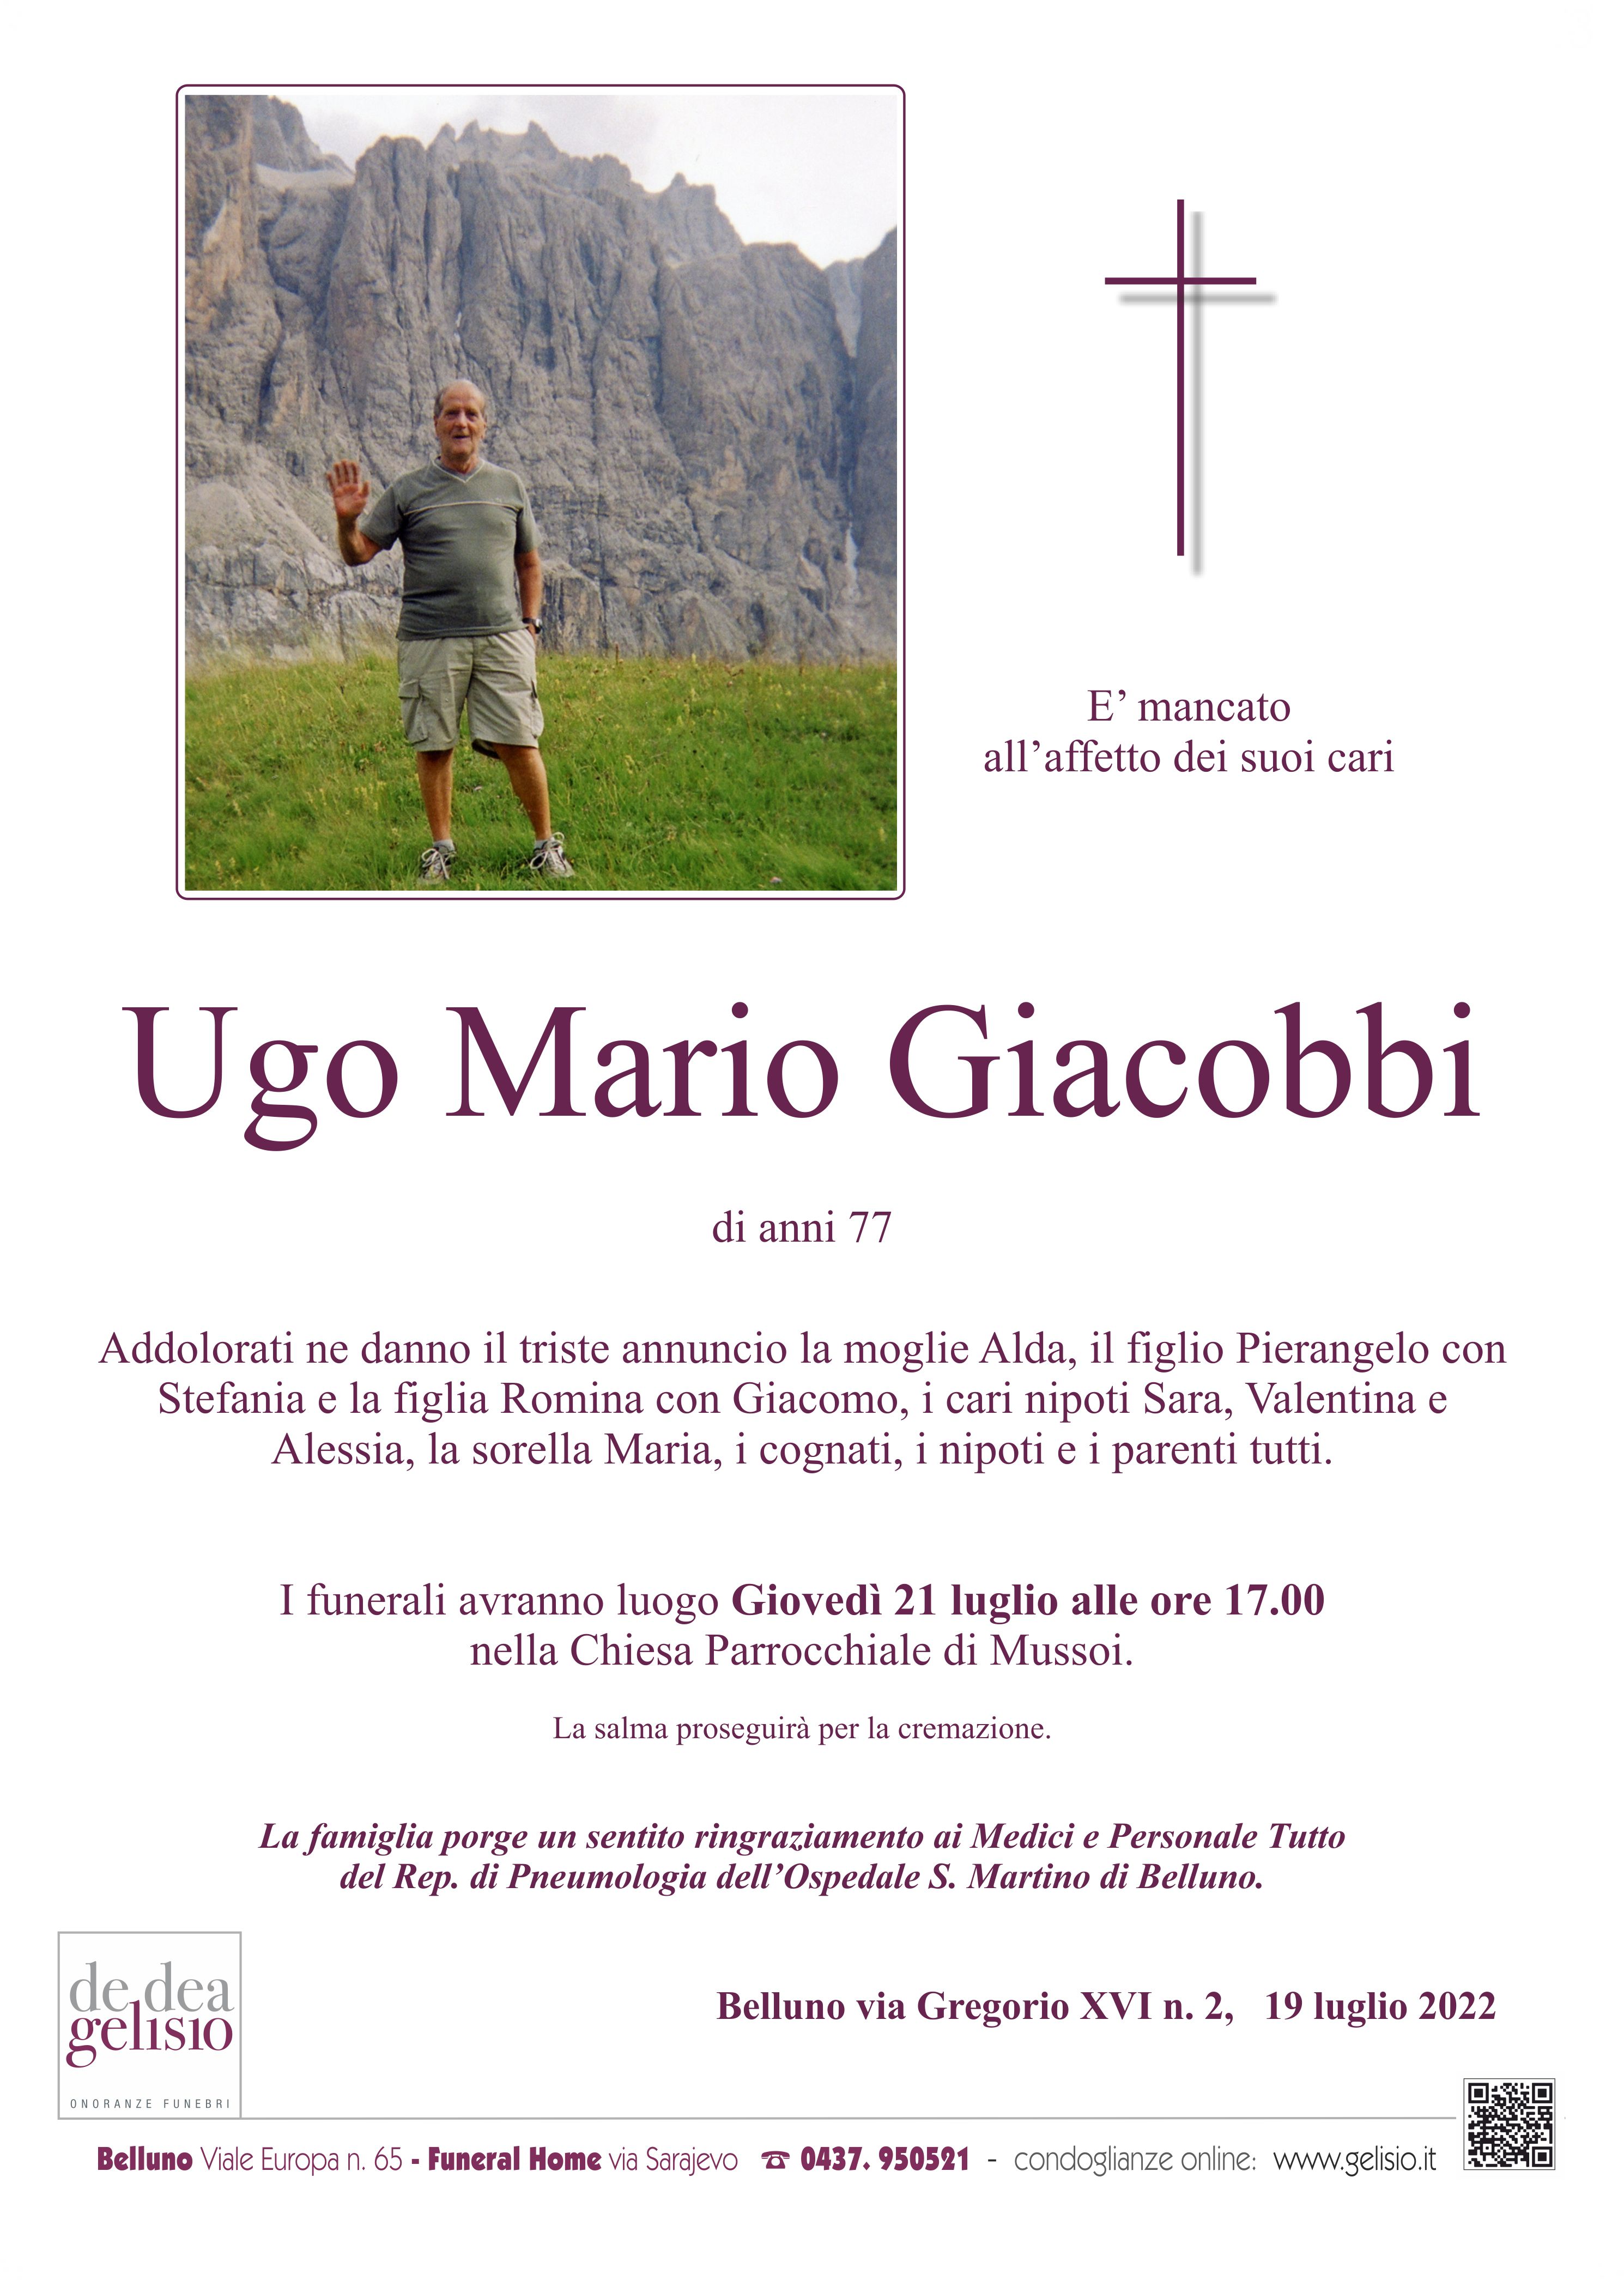 Giacobbi Ugo Mario